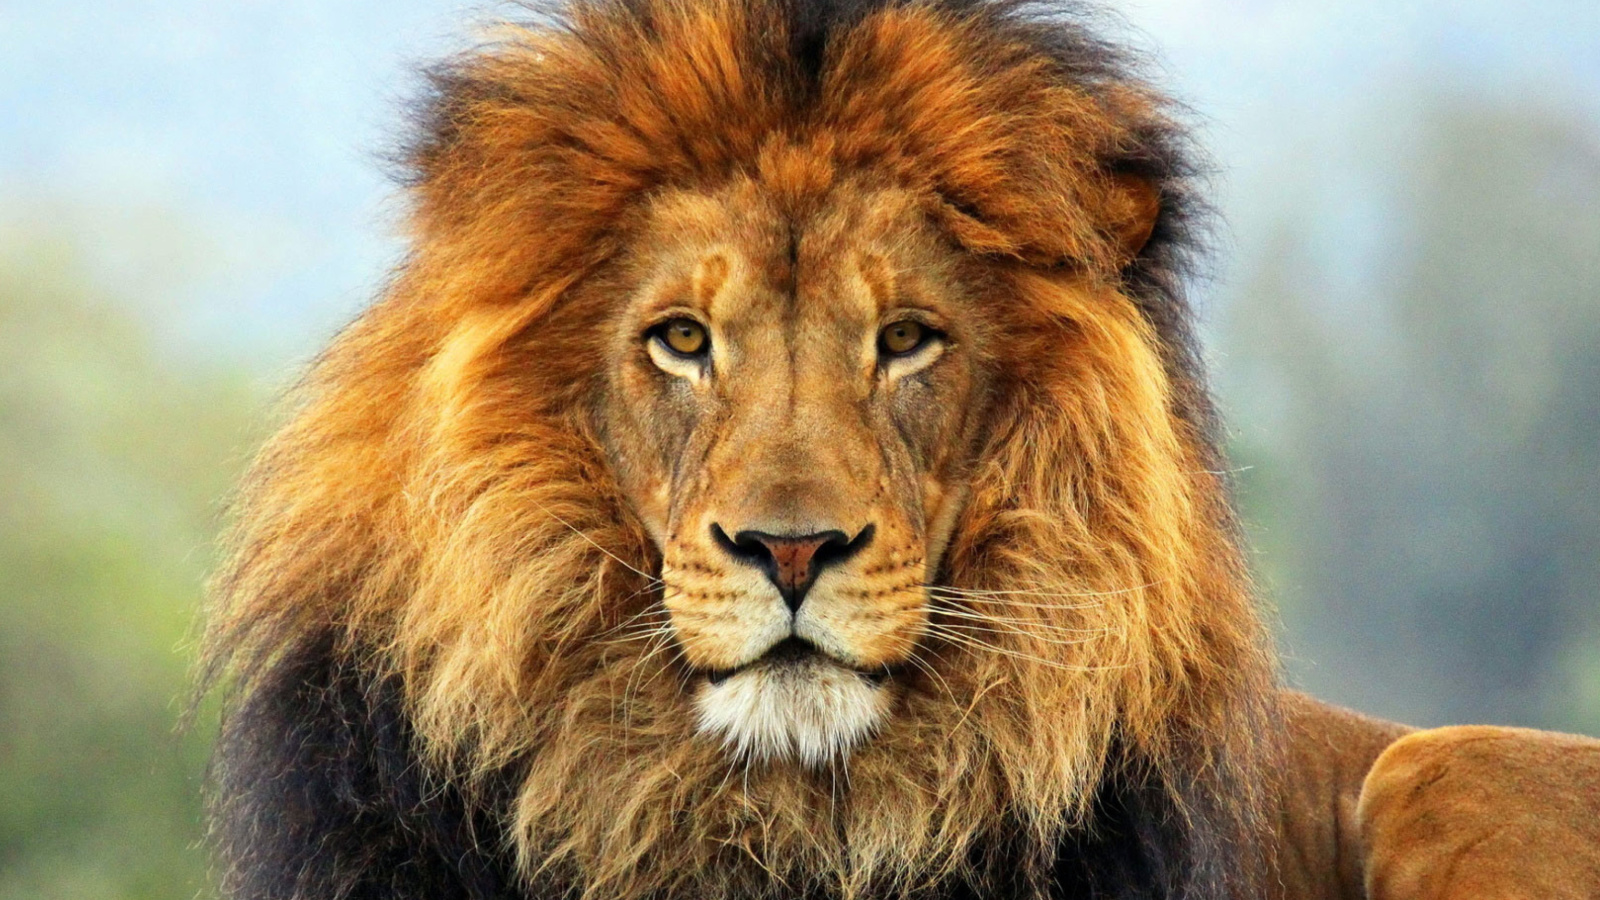 Lion Big Cat wallpaper 1600x900